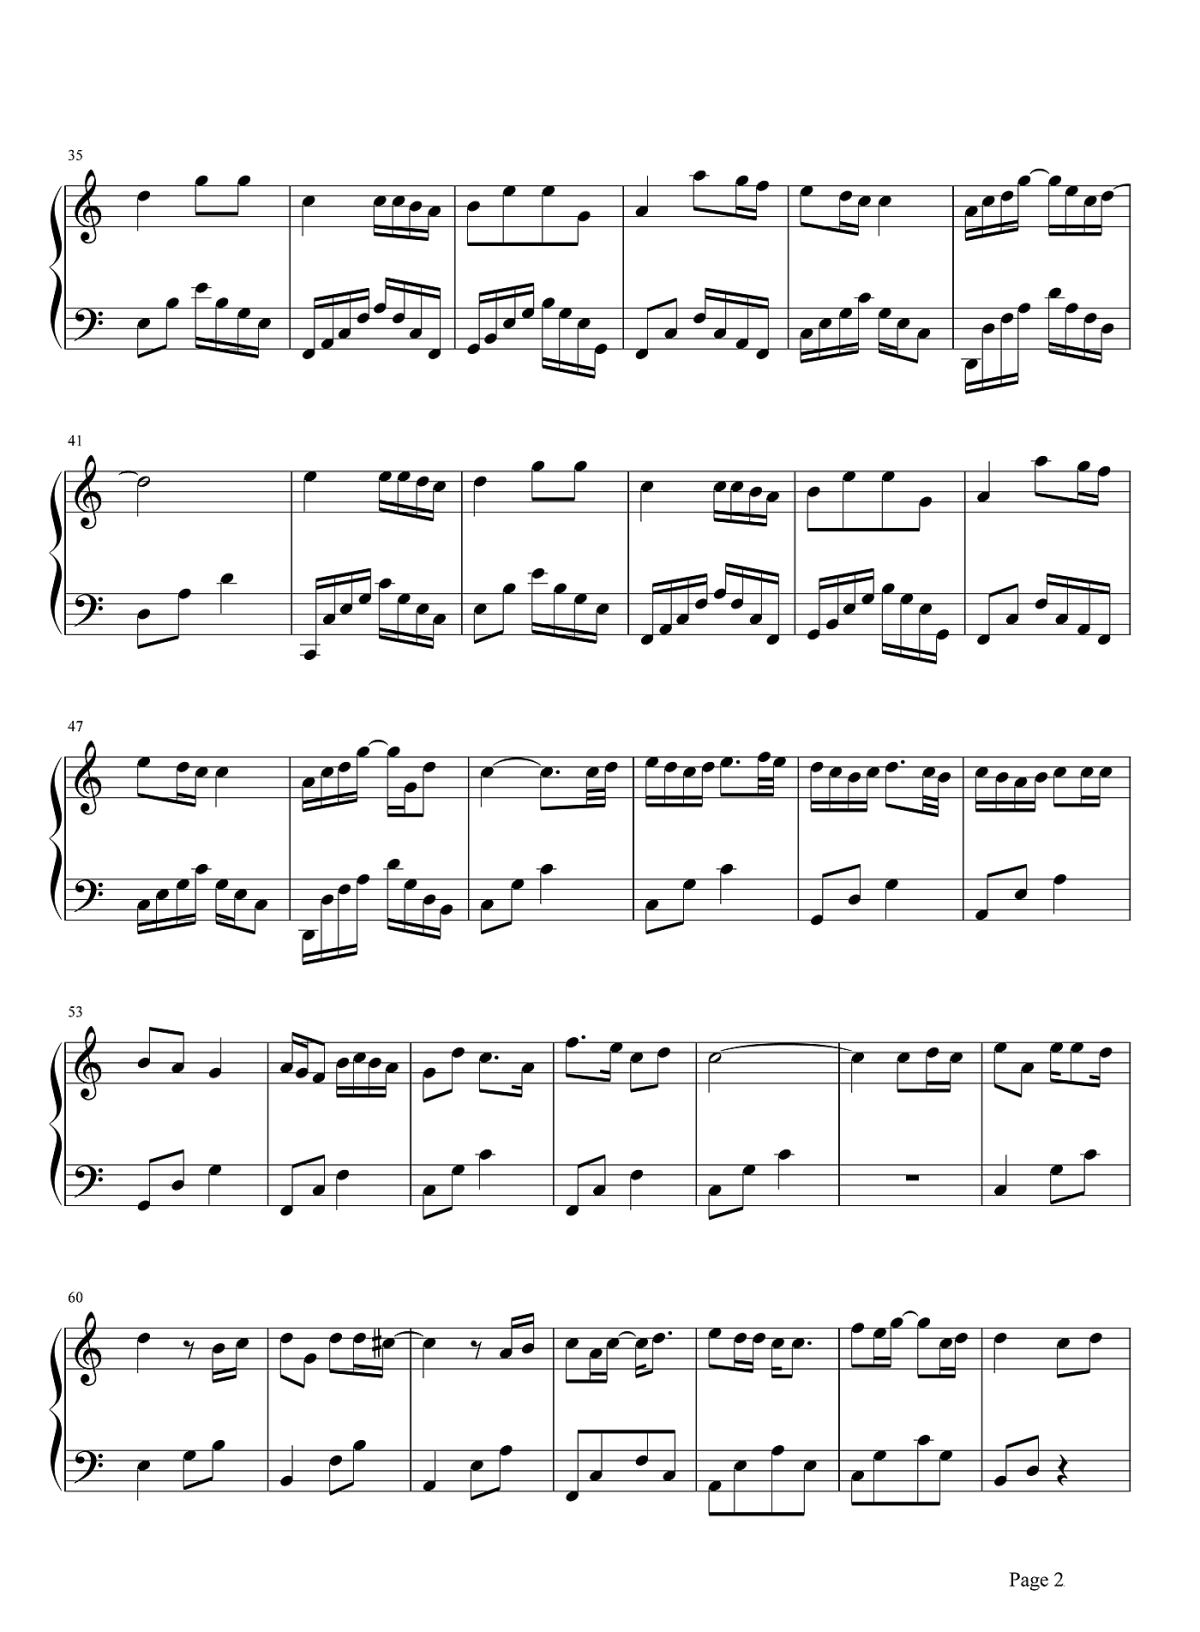 《小星星》钢琴曲,五线谱简谱初学者